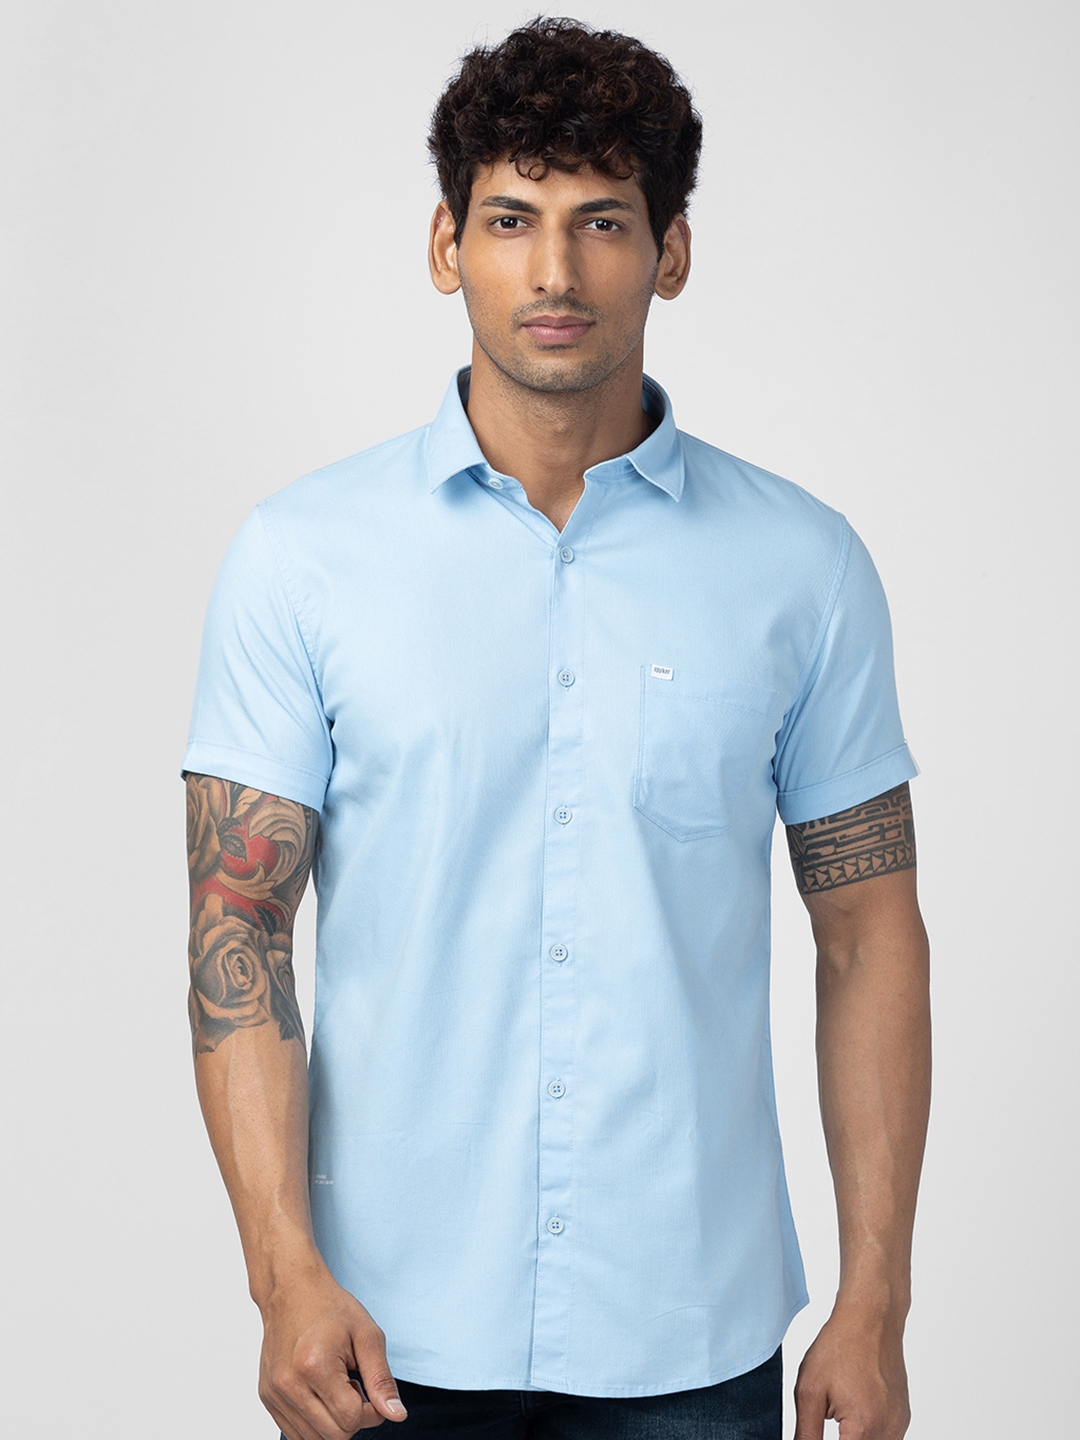 Spykar Dark Blue Cotton Full Sleeve Plain Shirt For Men